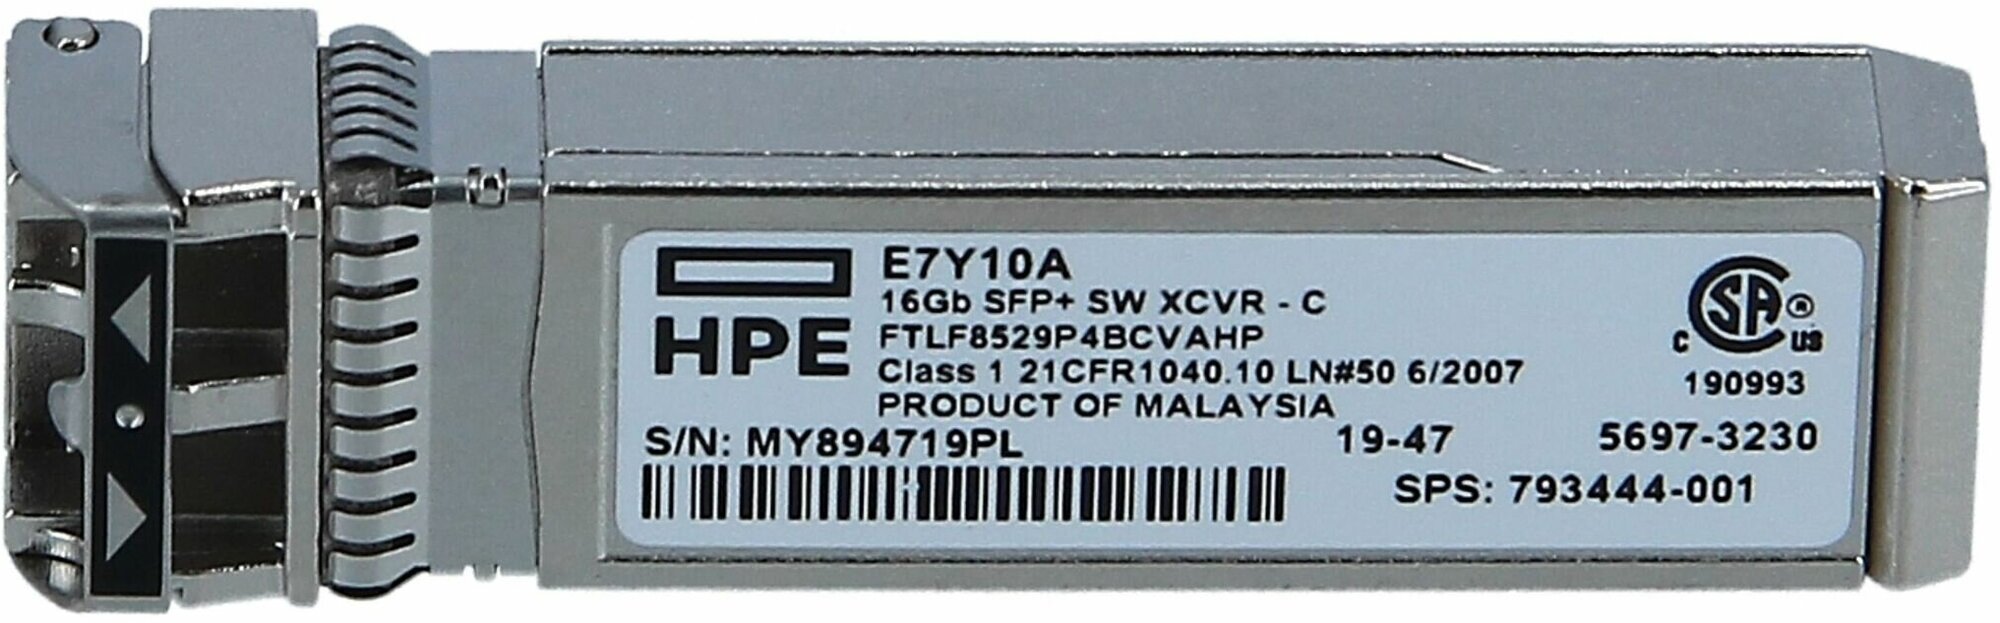 Трансивер HP 16Gb SFP+ SW 1-pack XCVR E7Y10A